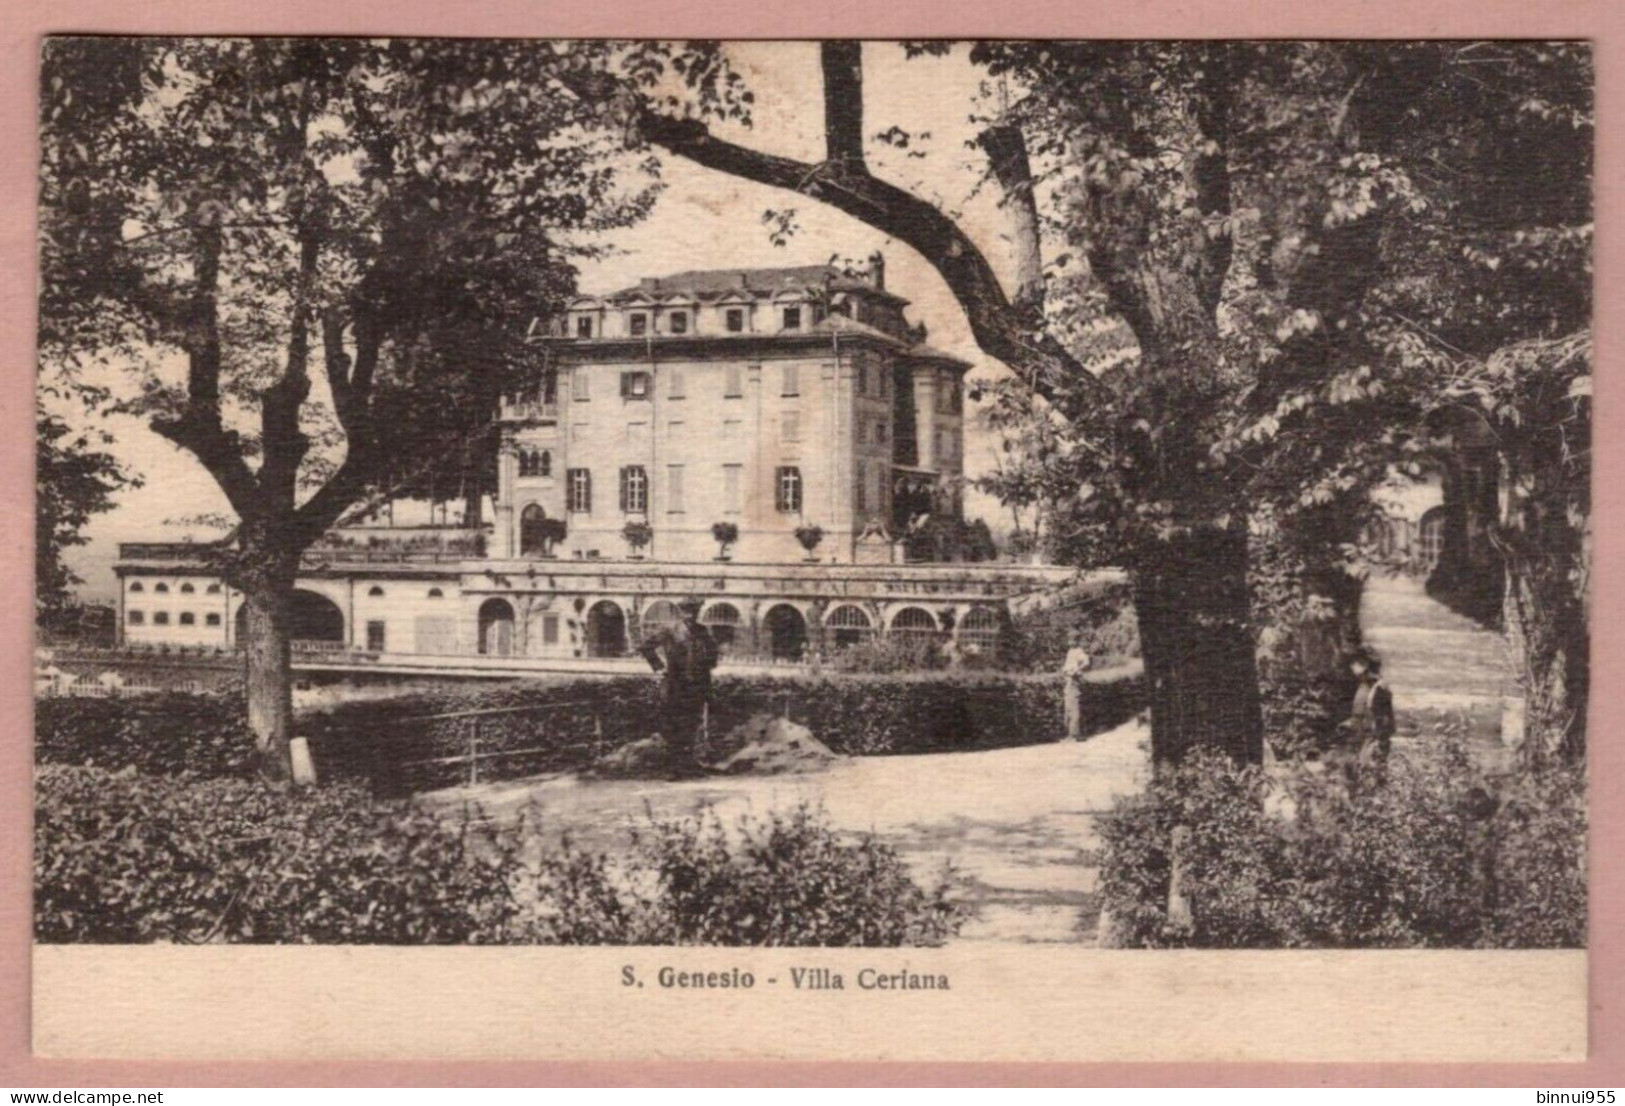 Cartolina Torino S. Genesio Villa Ceriana - Viaggiata - Viste Panoramiche, Panorama